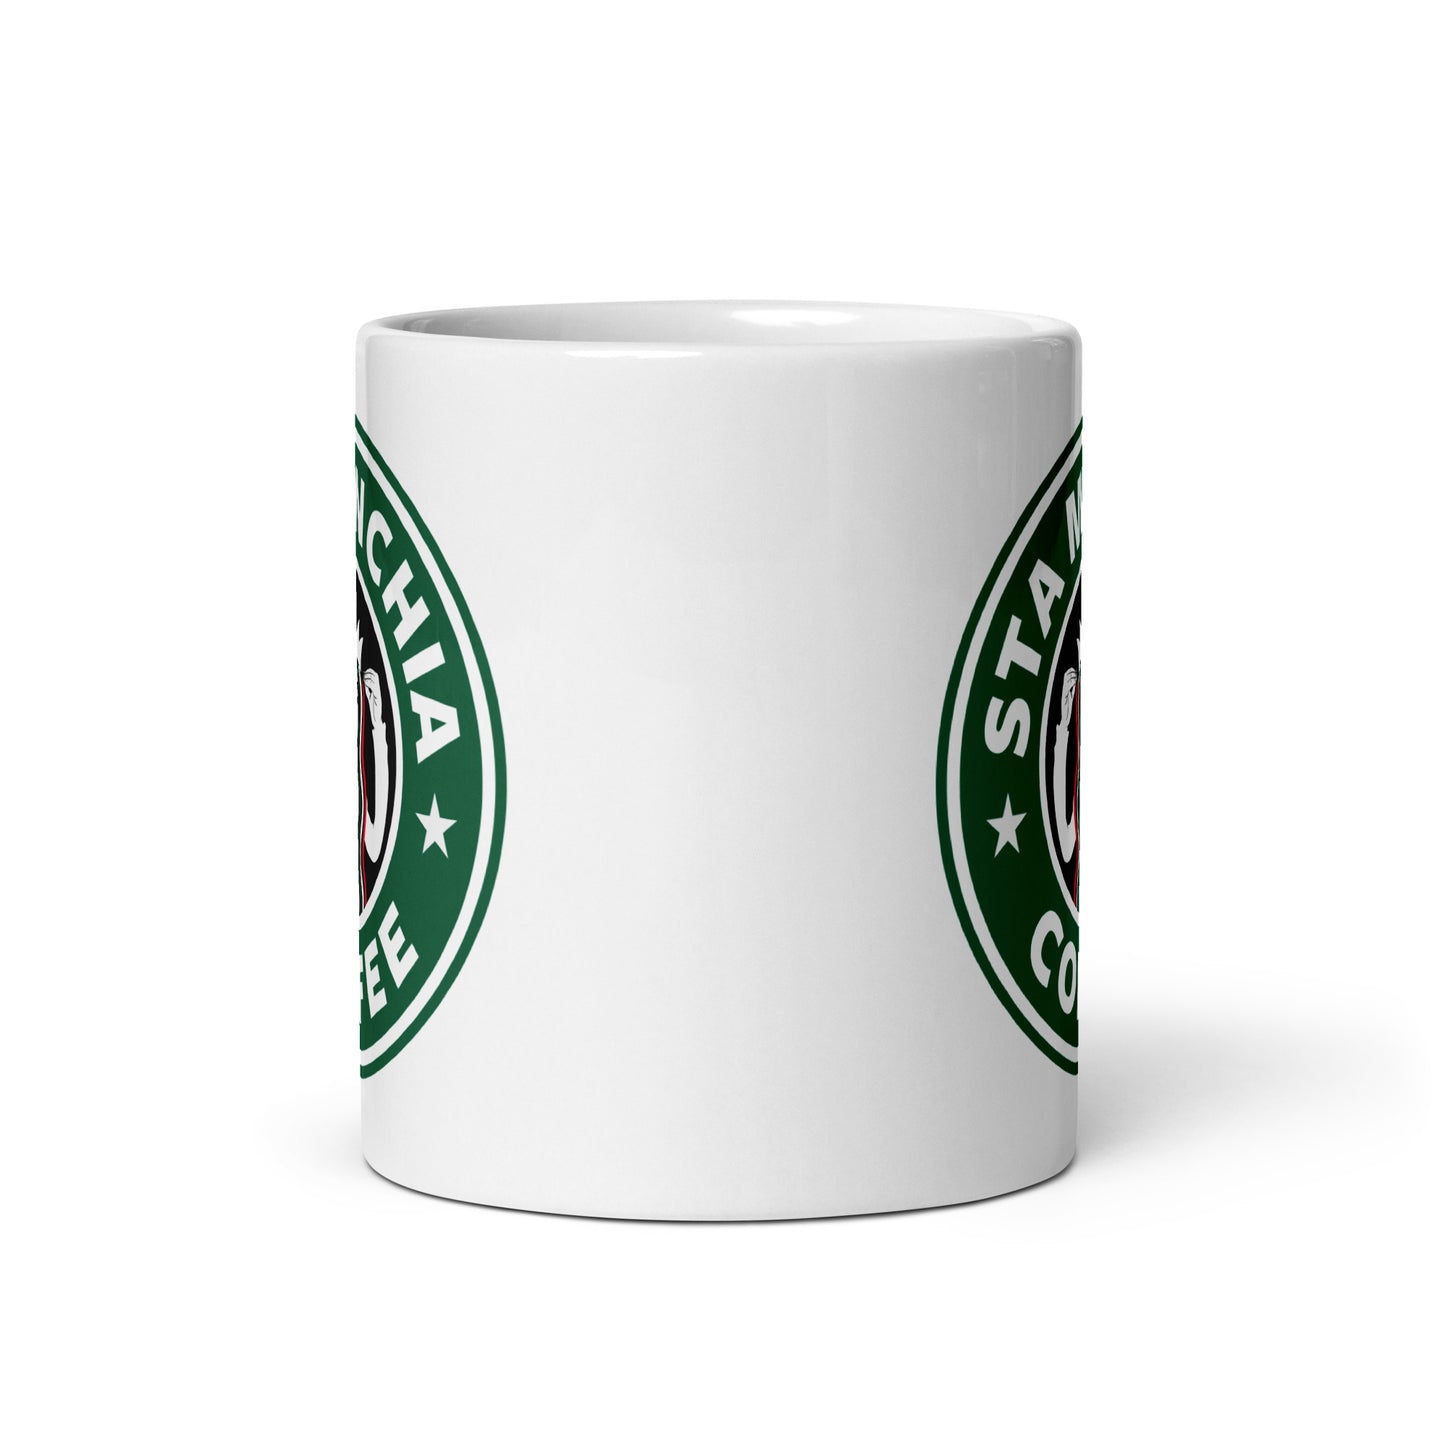 Sta Minchia - White glossy mug